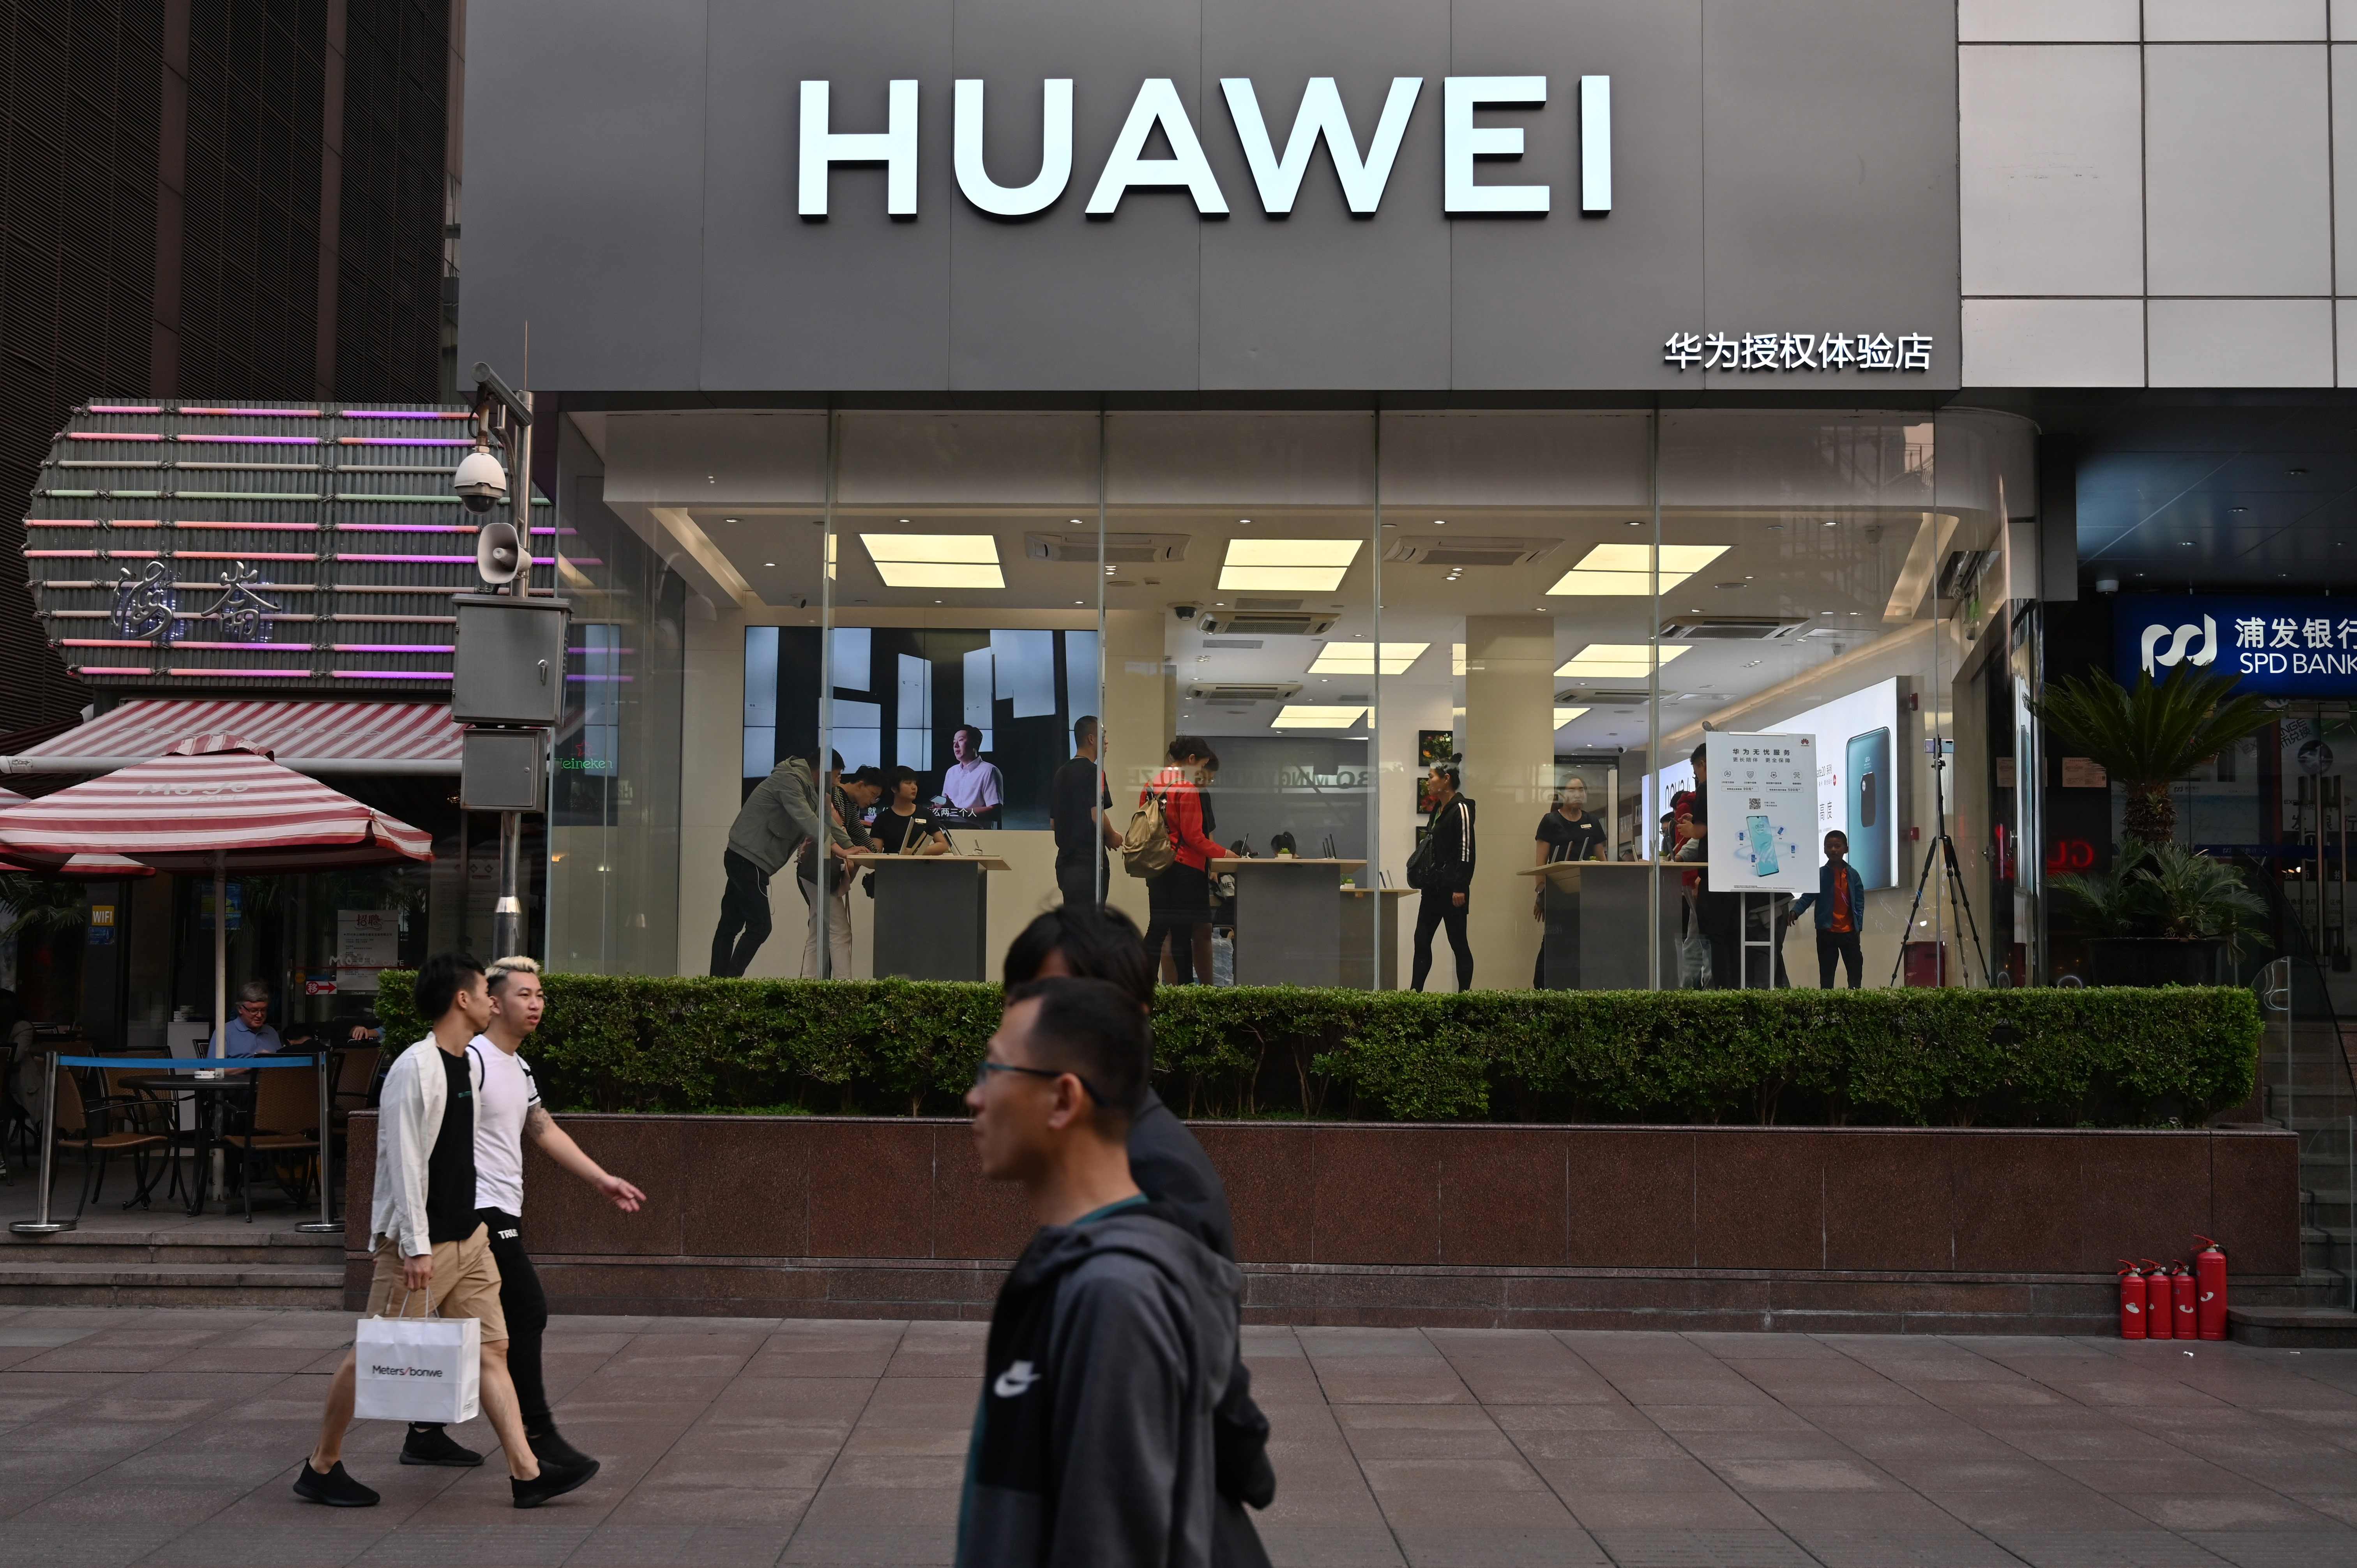 Una tienda de Huawei Shanghai. Trump ha prohibido los negocios con compañías involucradas en espionaje contra Estados Unidos. (Foto Prensa Libre: AFP)